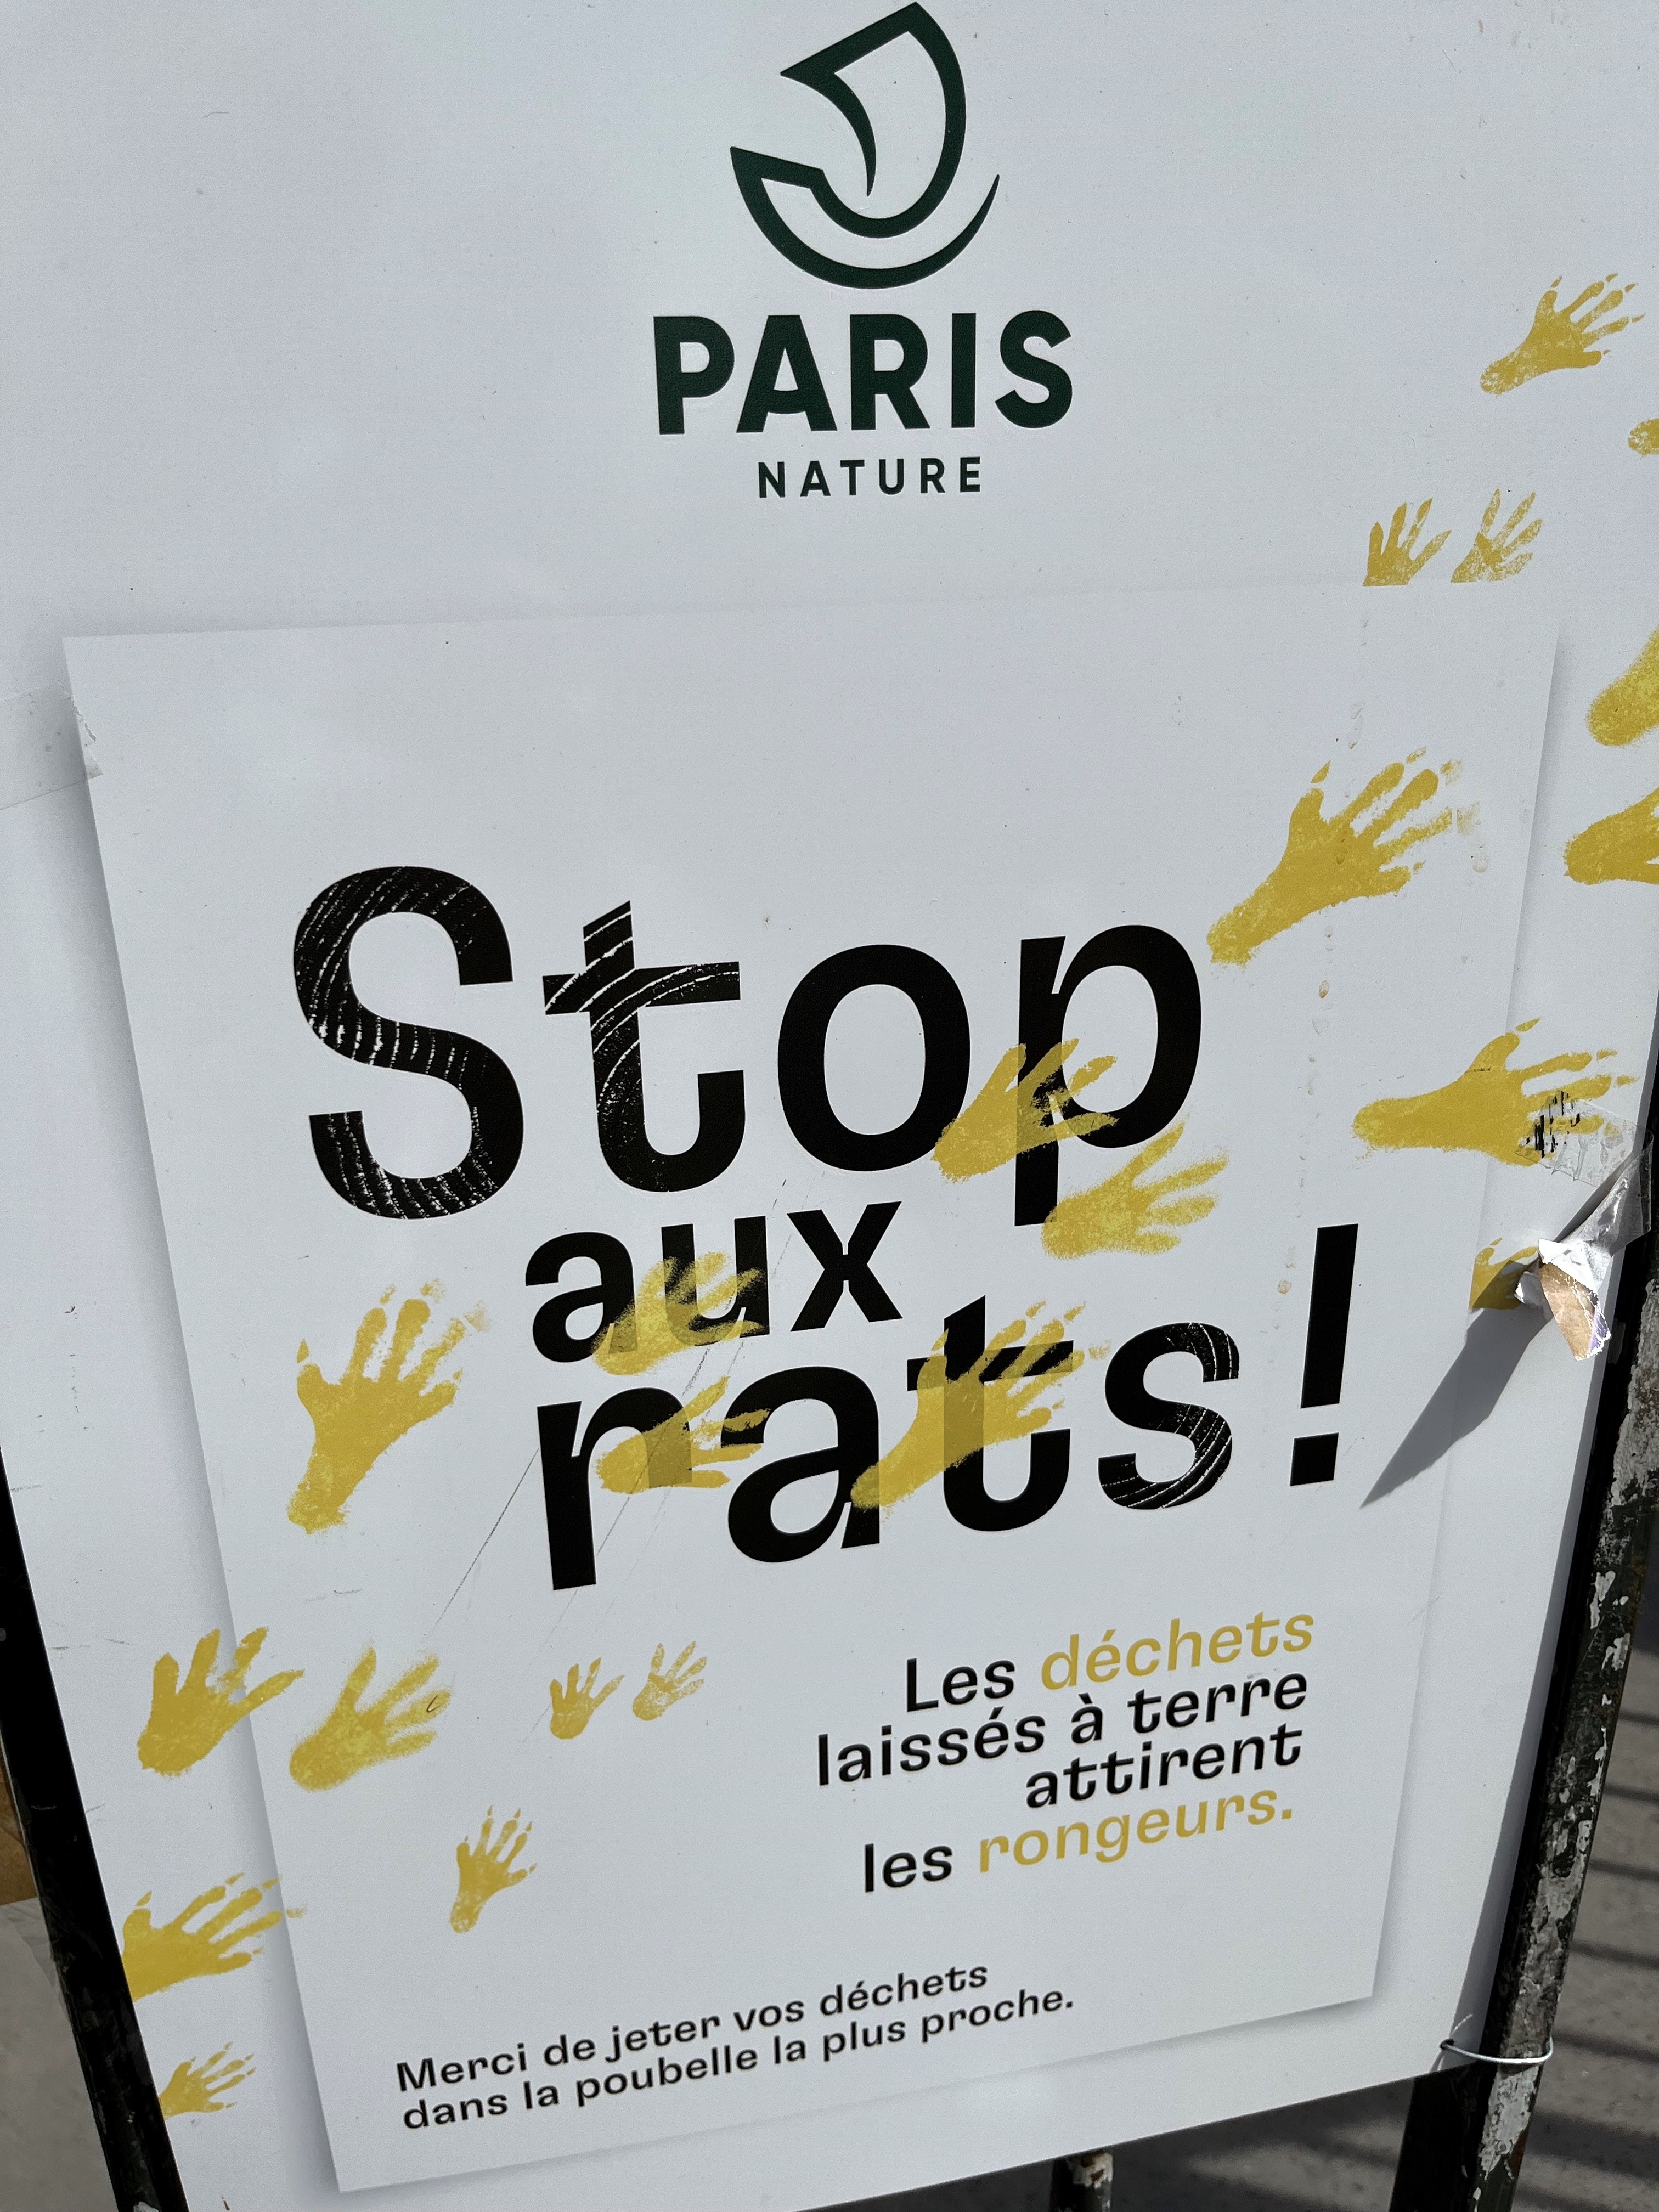 A sign in paris reading "stop aux rats"